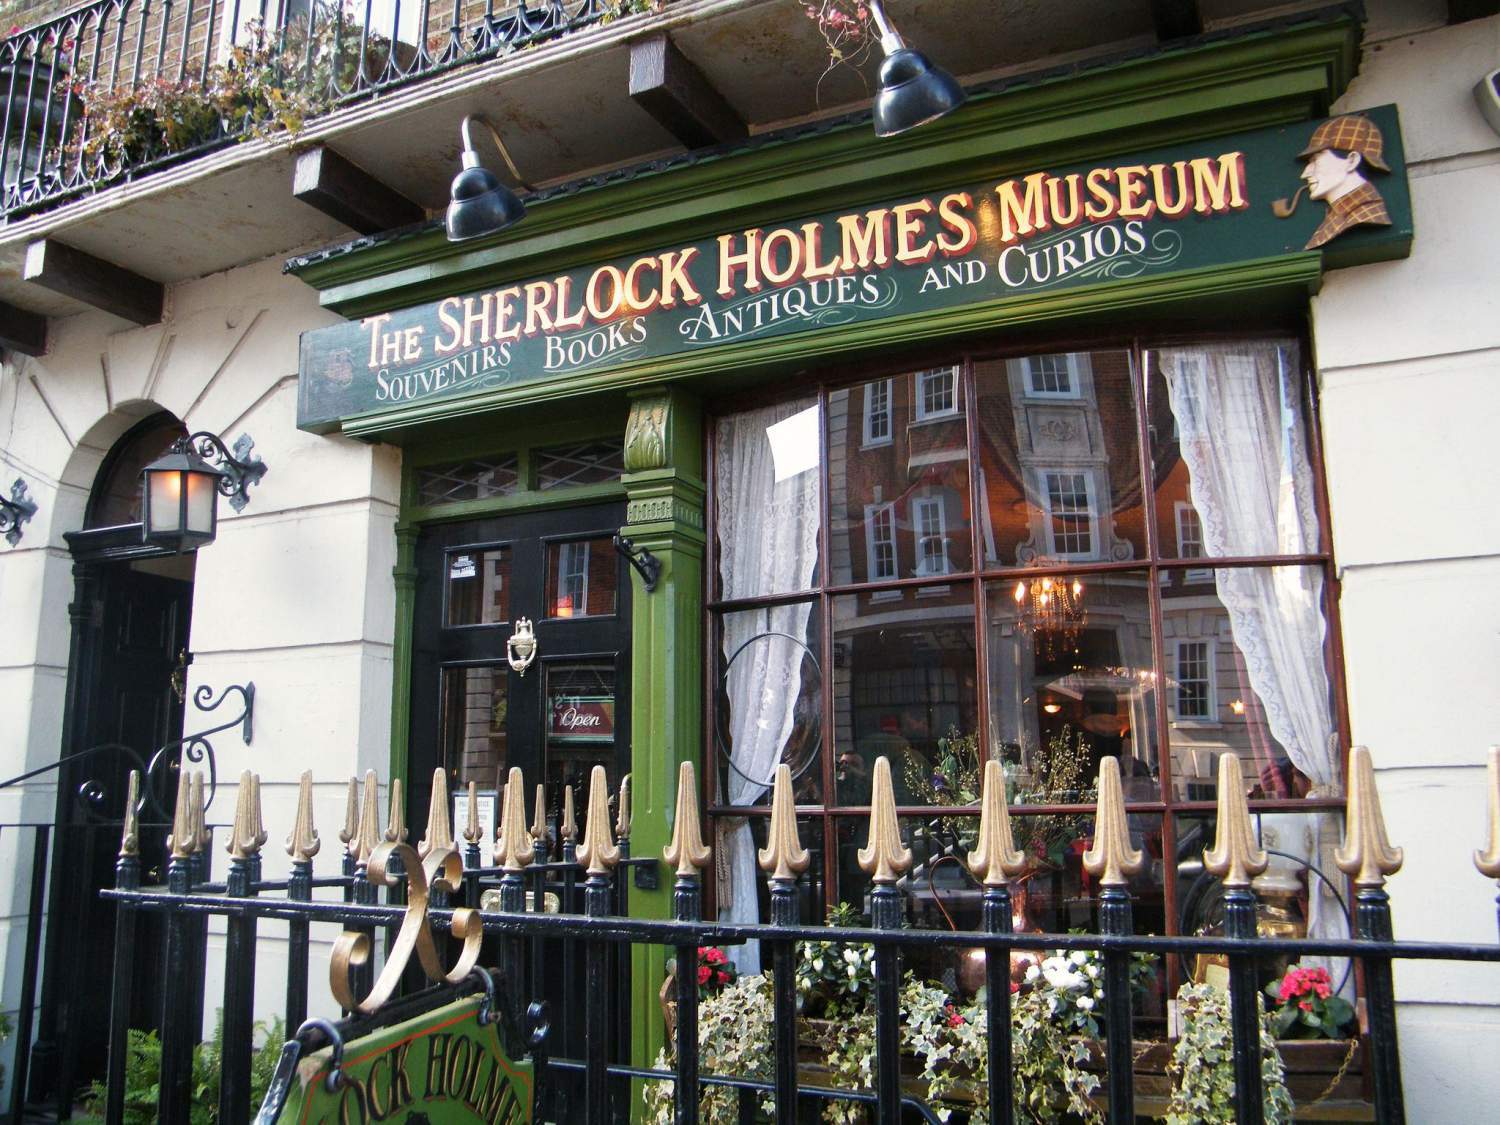 Museum of Sherlock Holmes in London